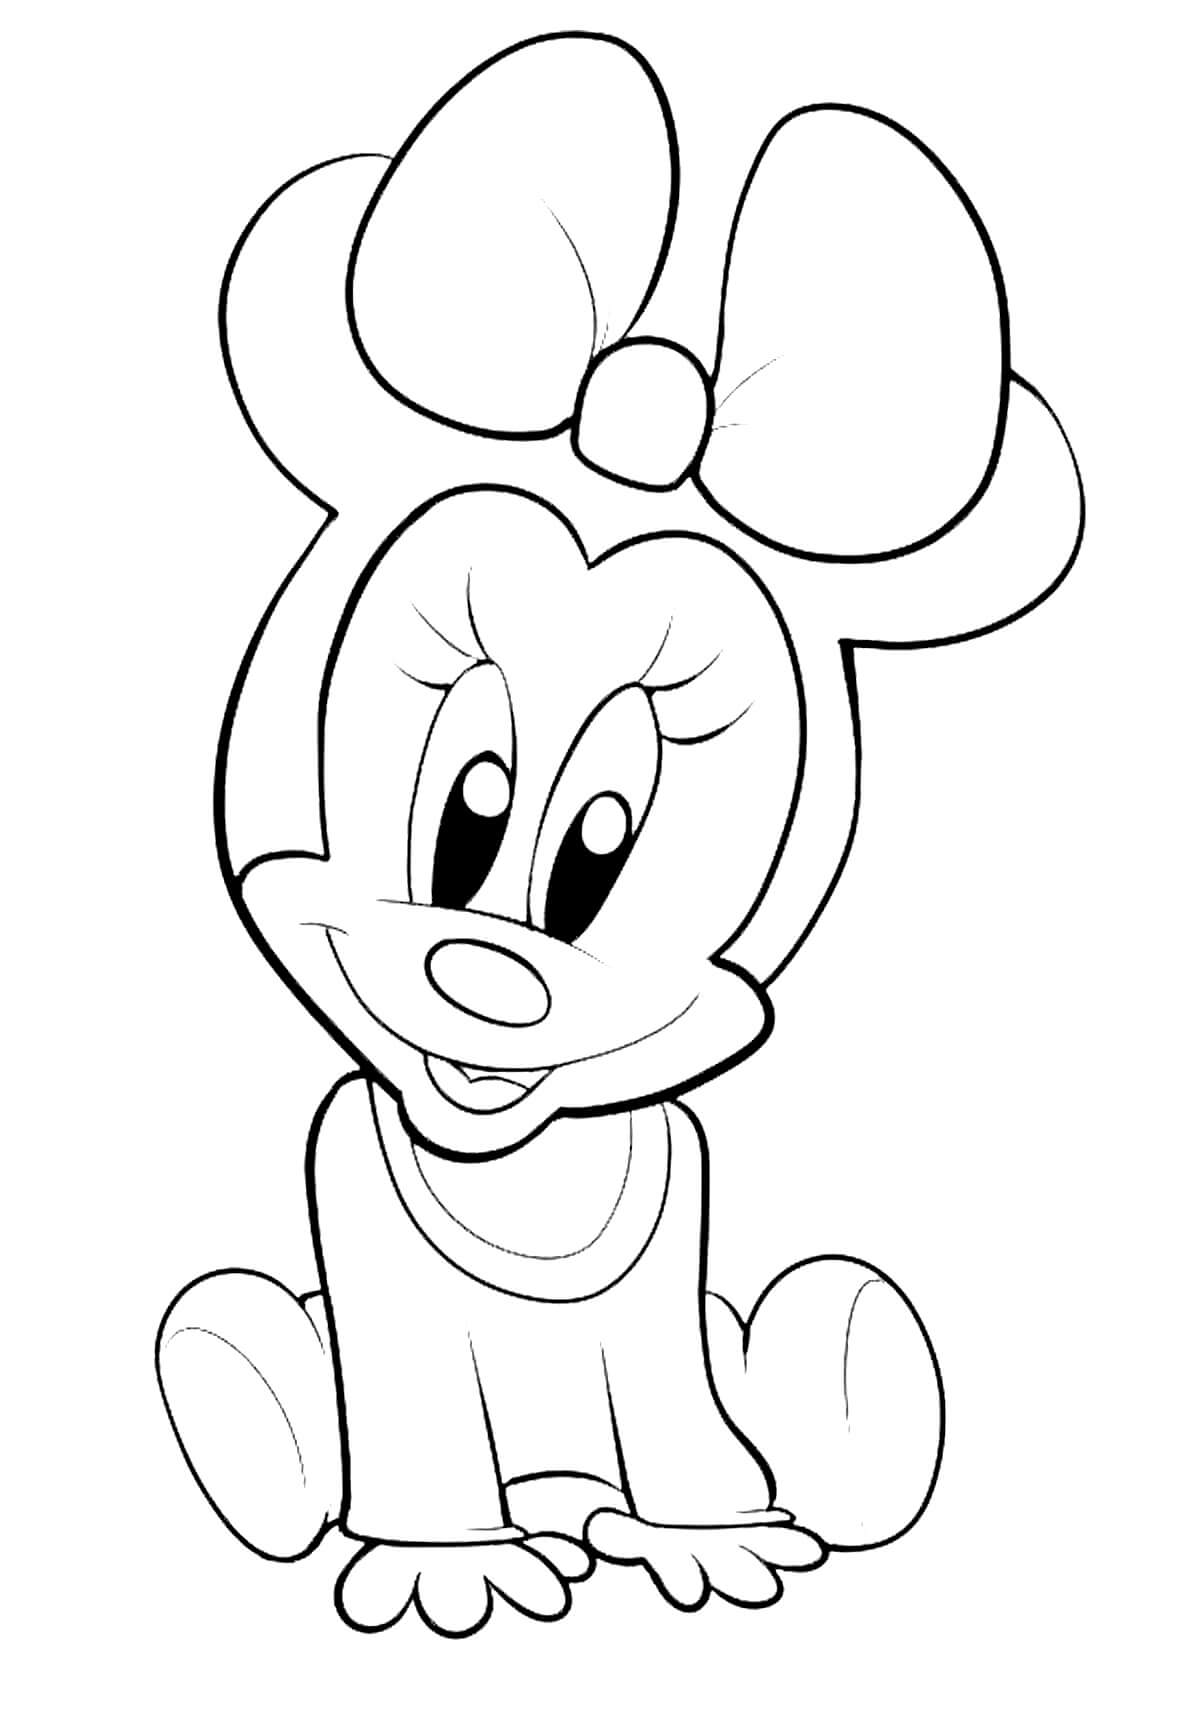 Baby Minnie Mouse zitten